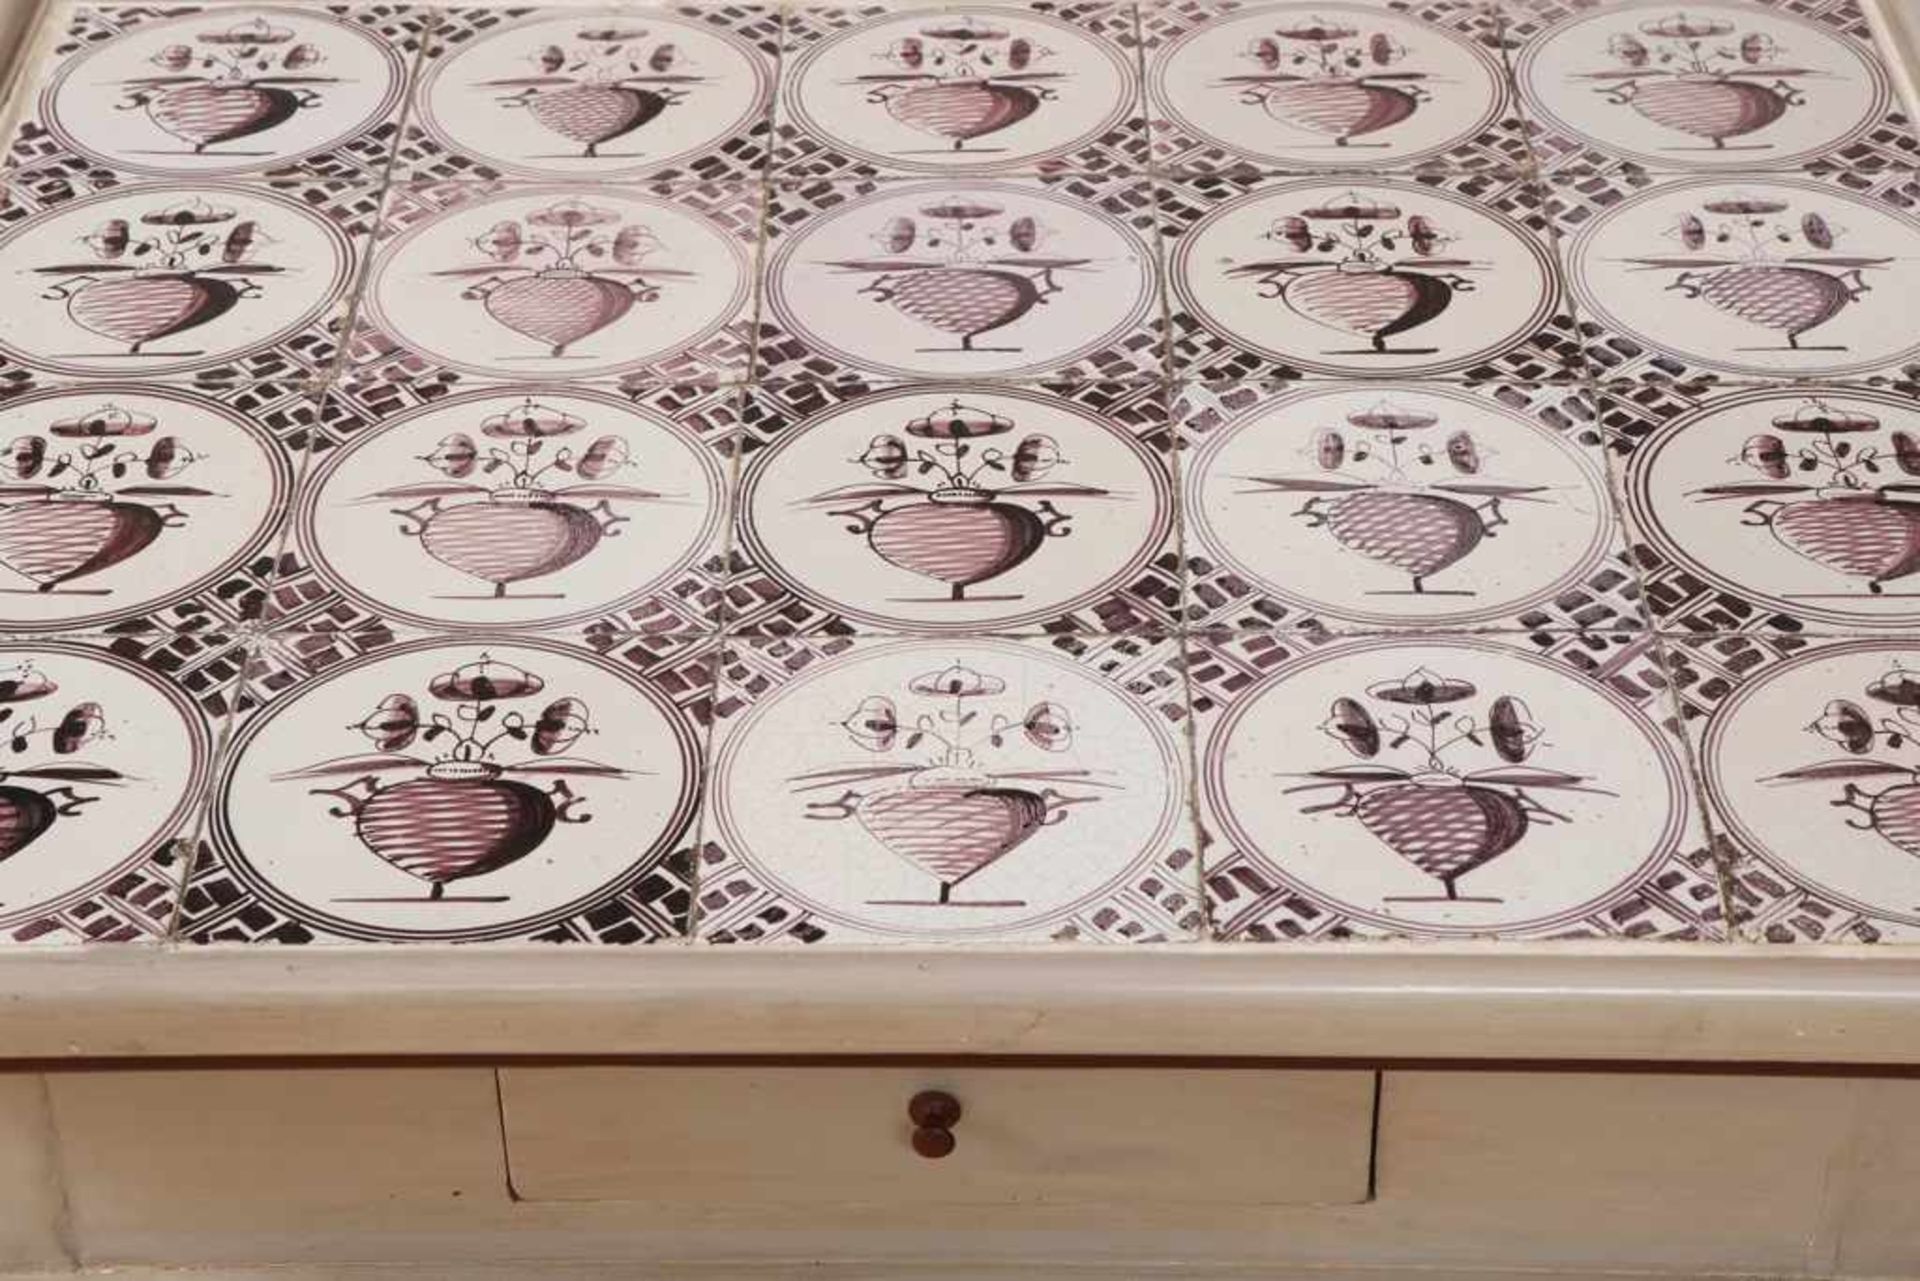 Sogenannter Tee-Tisch im friesischen Stil grau-rot gefasst, Deckplatte mit magentafarbenen Kacheln - Bild 2 aus 2